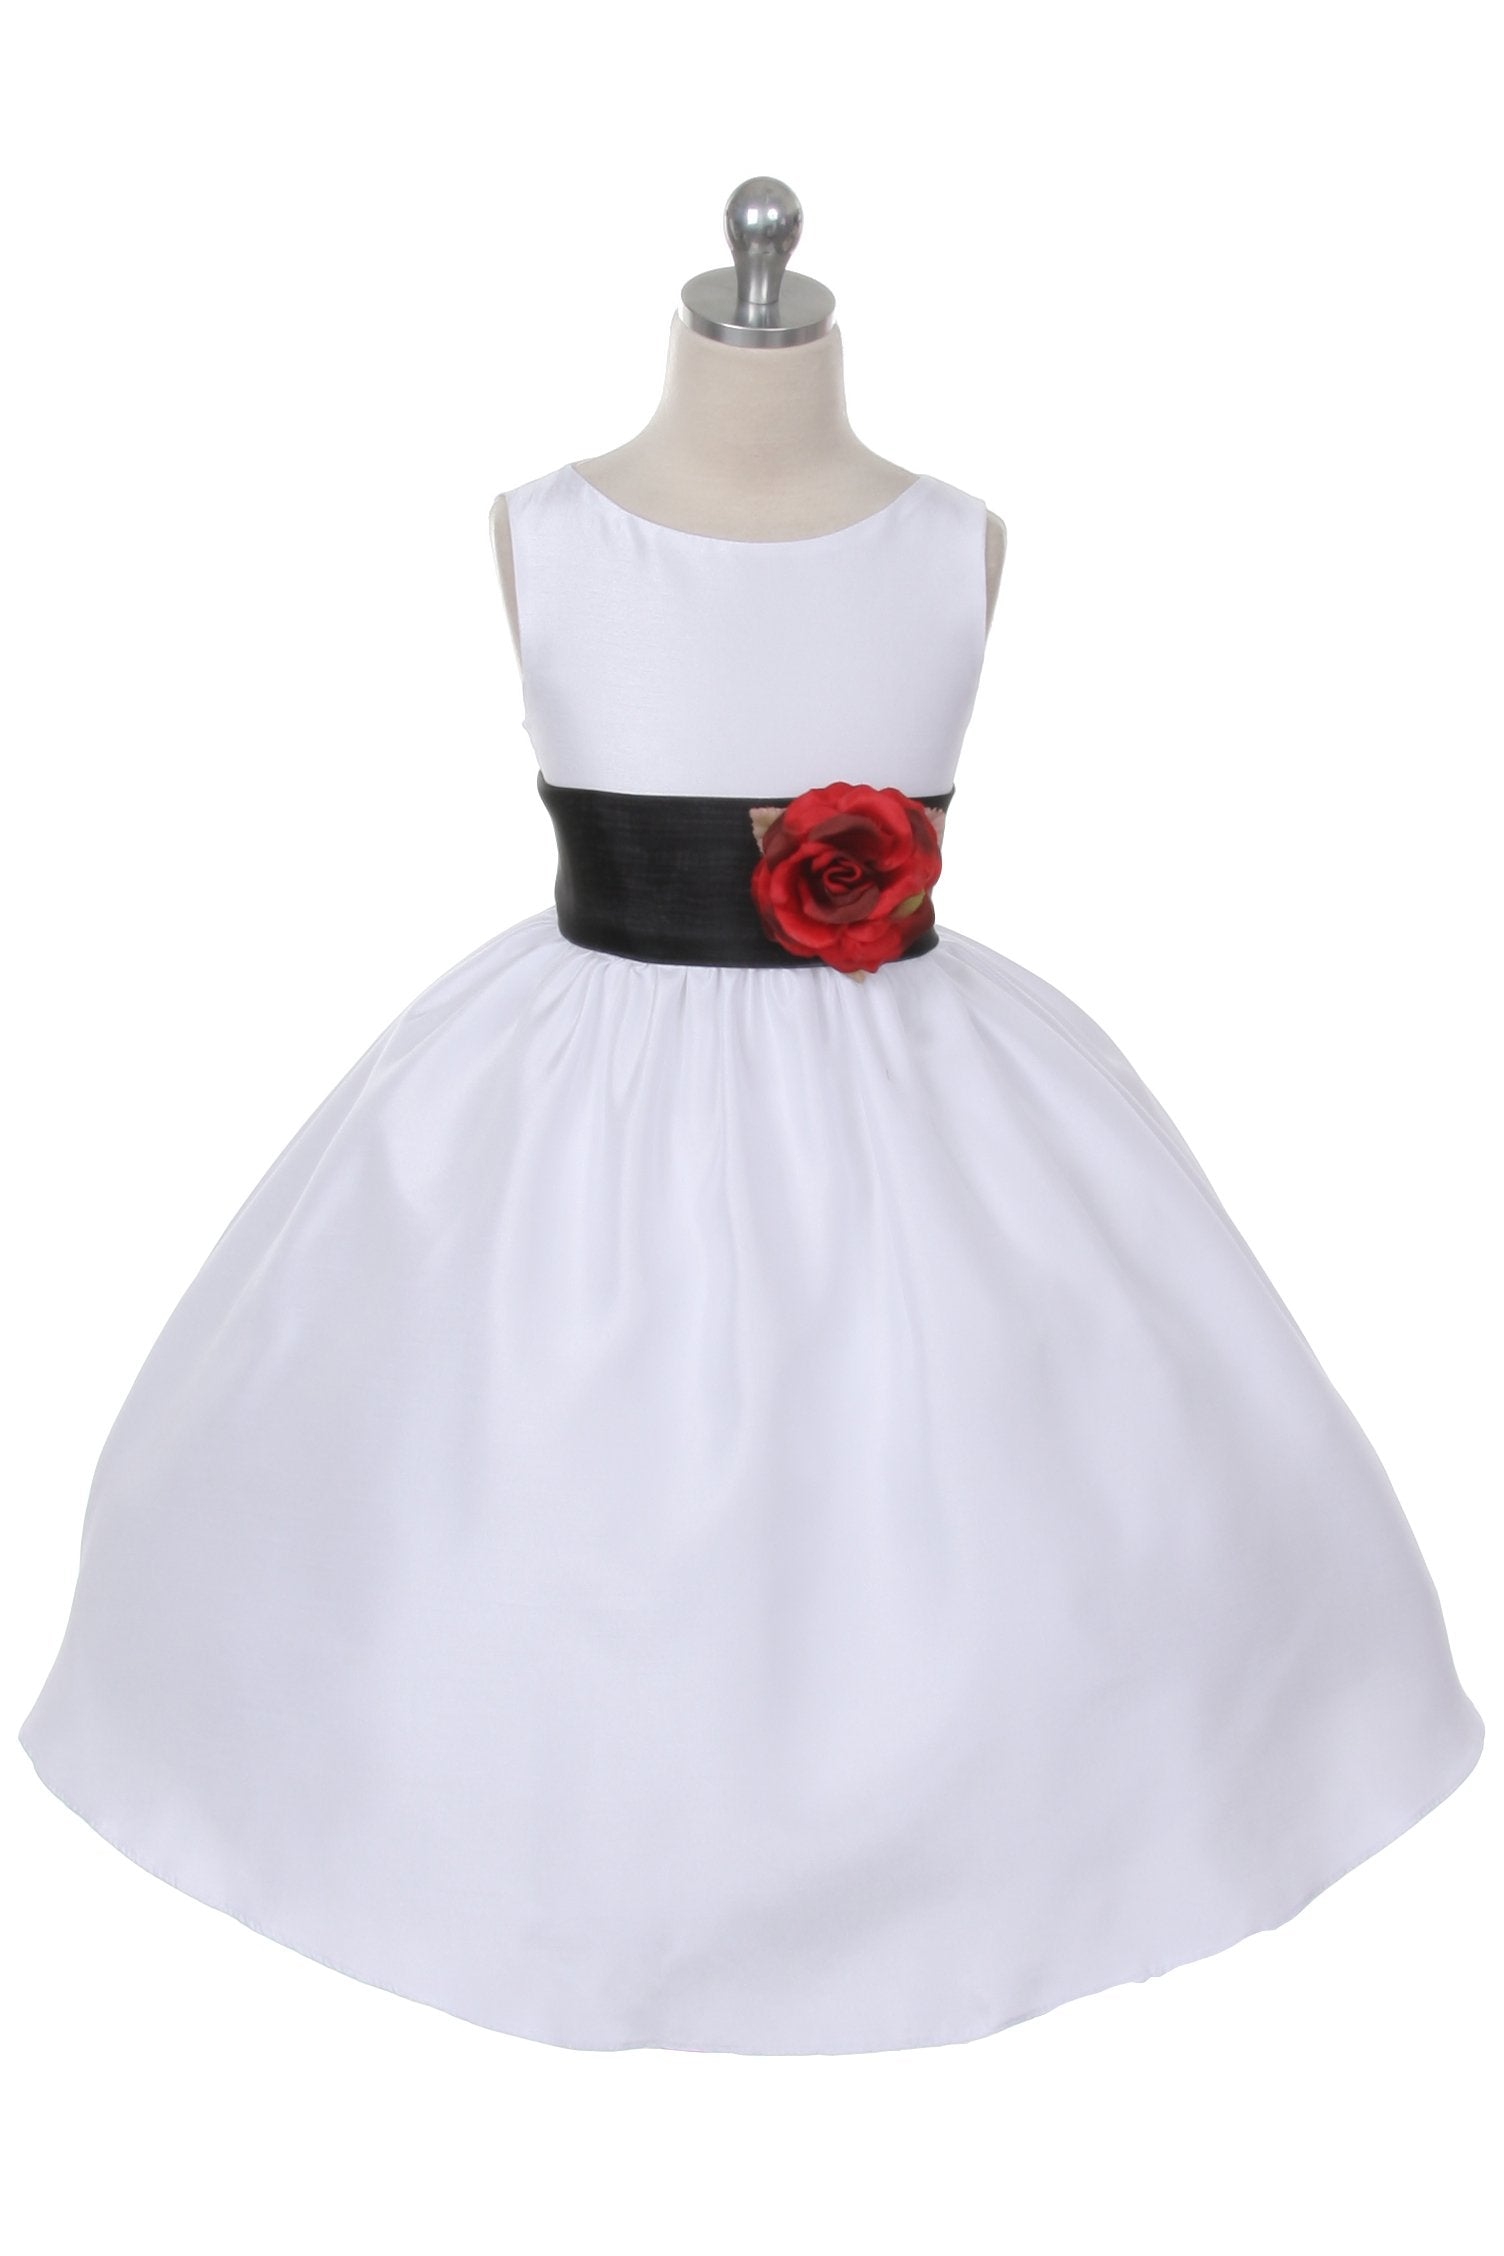 Dress - Poly Silk Organza Sash Girl Dress (White Dress)